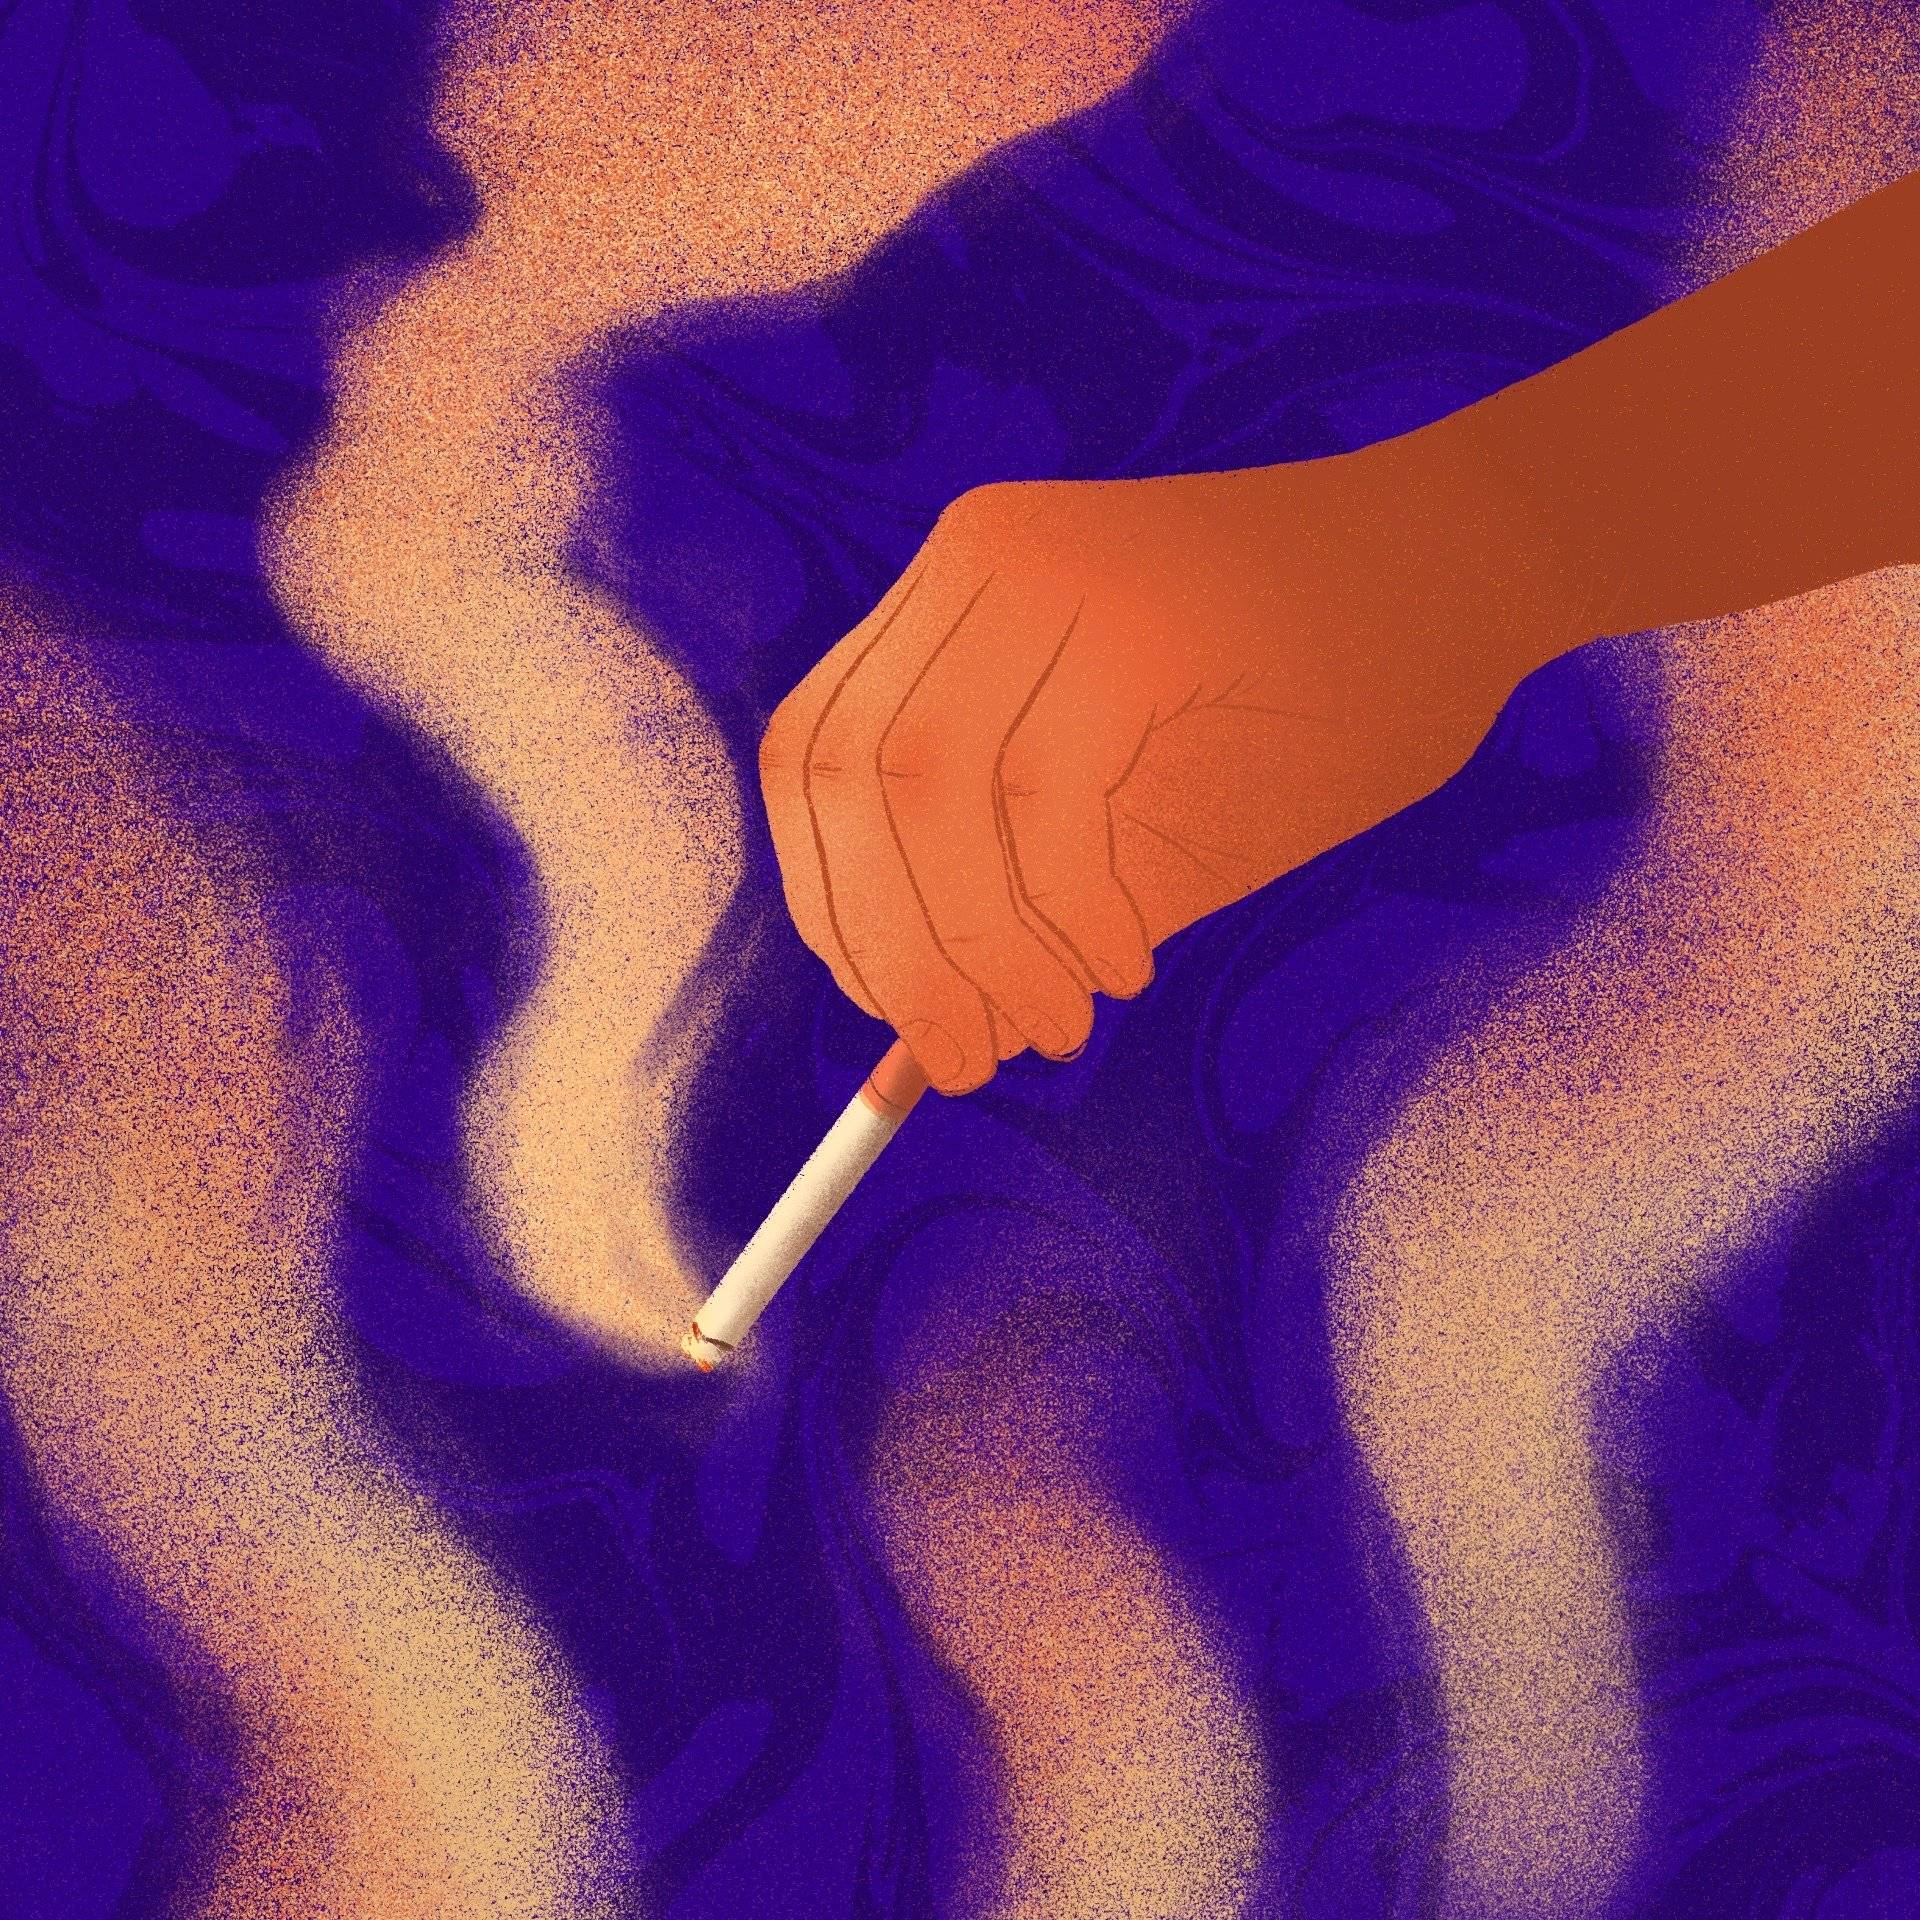 Ilustracja przedstawia rękę z palącym się papierosem, dymek z niego, na tle kolorowych smug